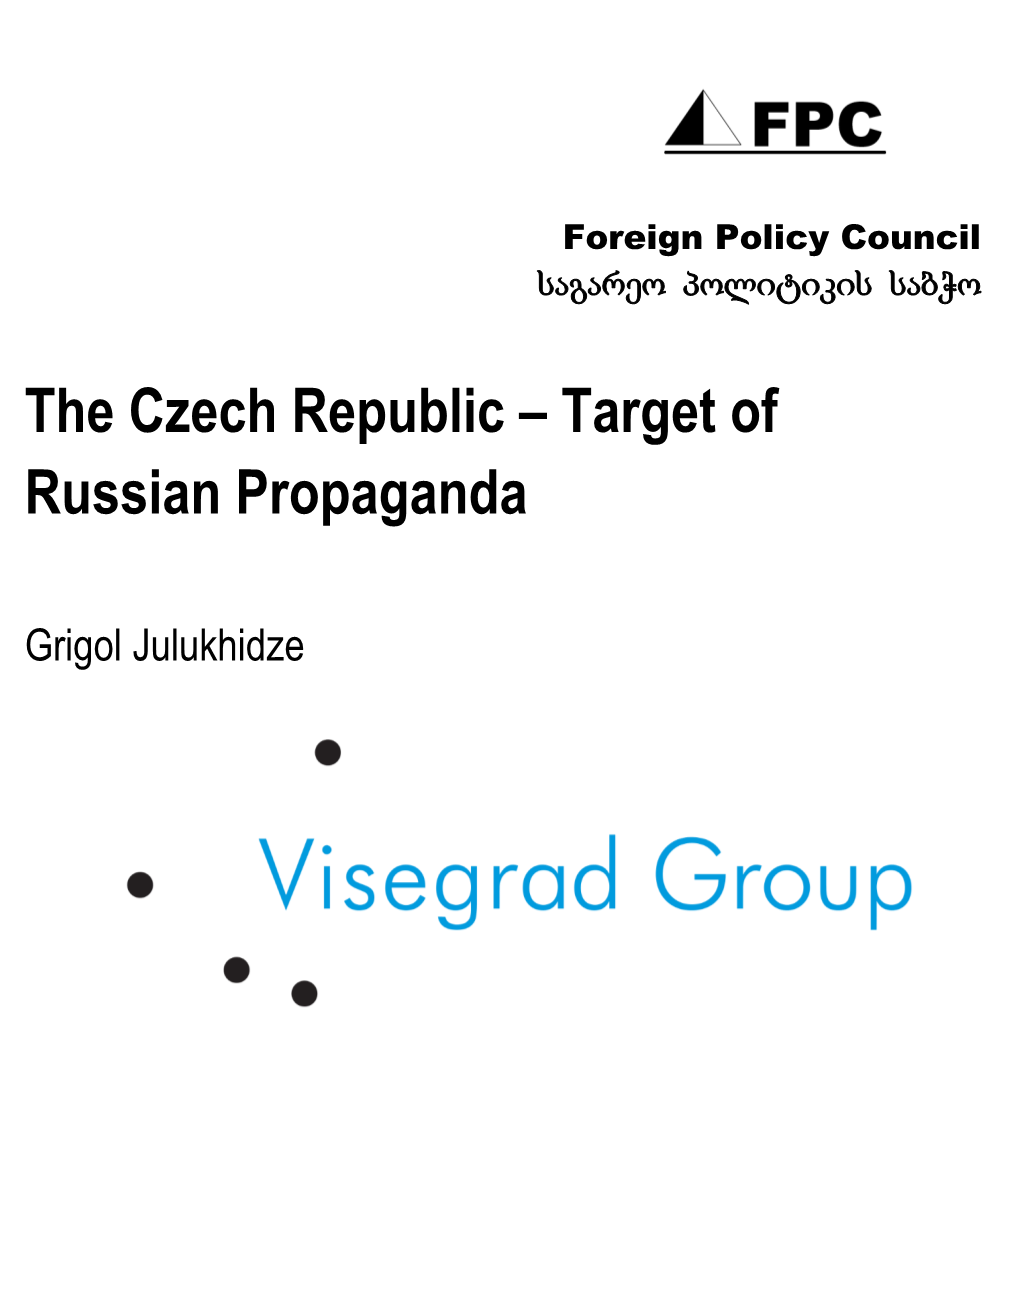 The Czech Republic – Target of Russian Propaganda